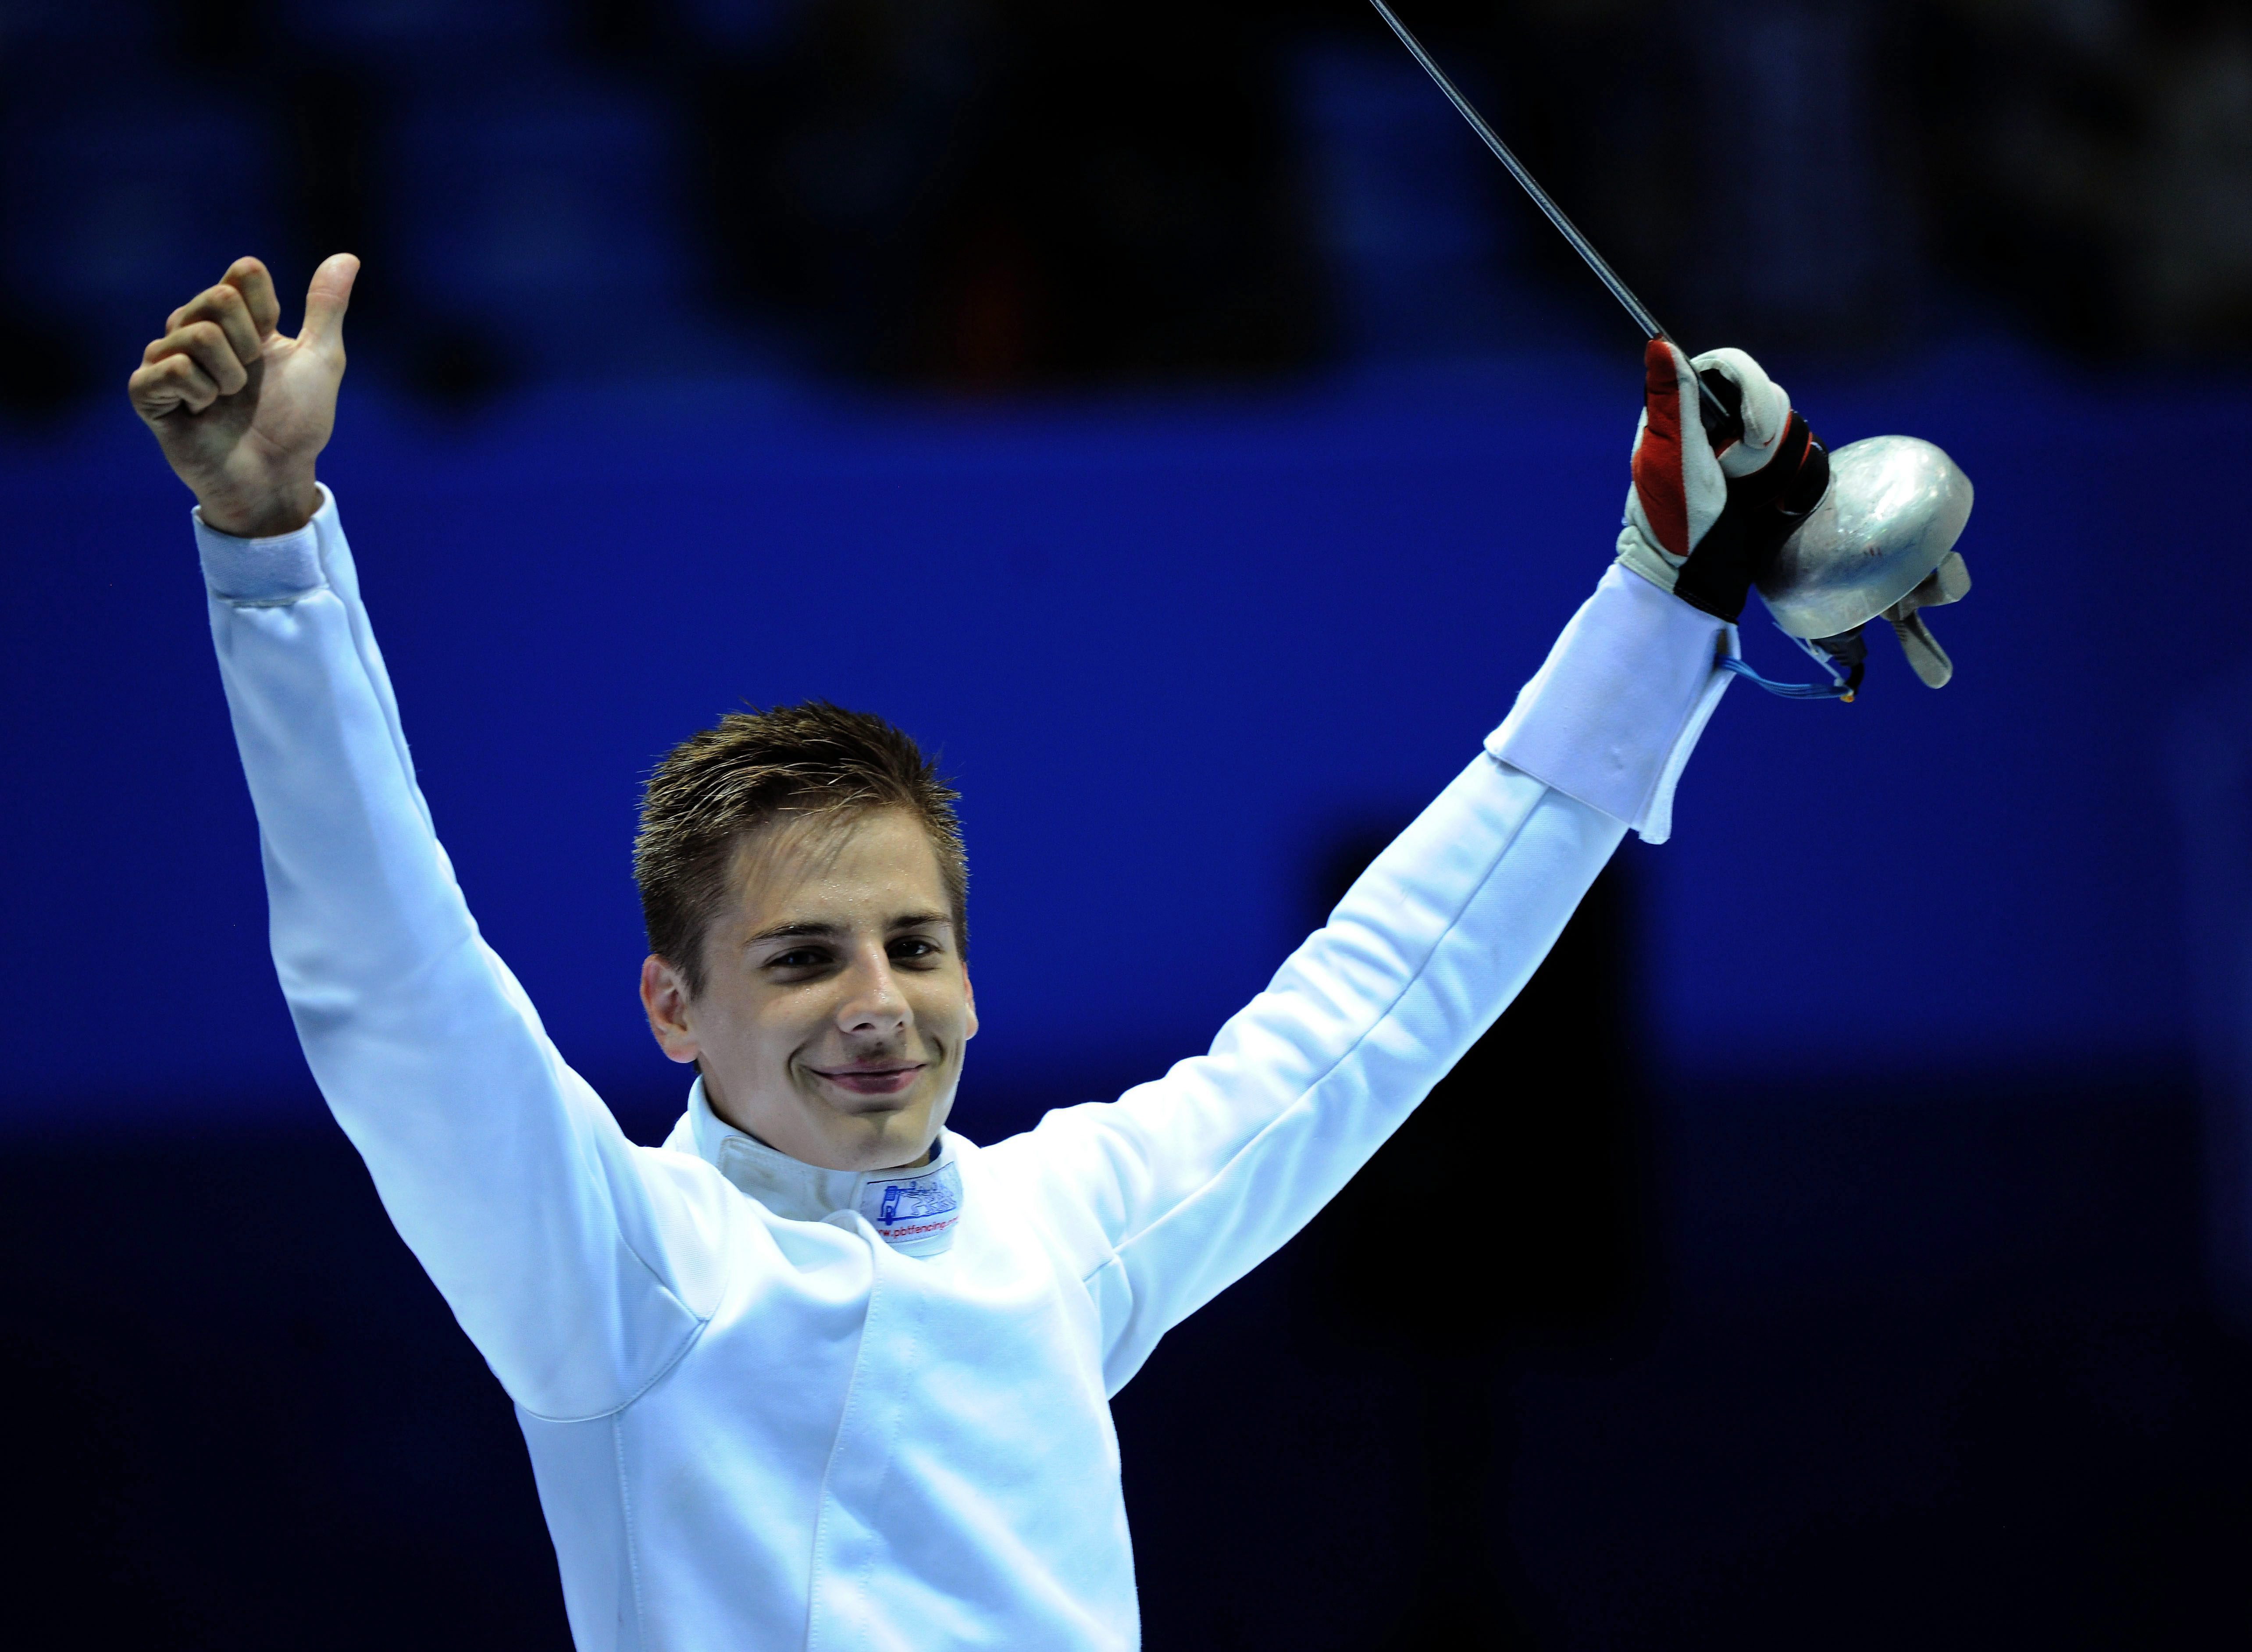 Ifjúsági olimpia - Esztergályos Patrik vívó ezüstérmes